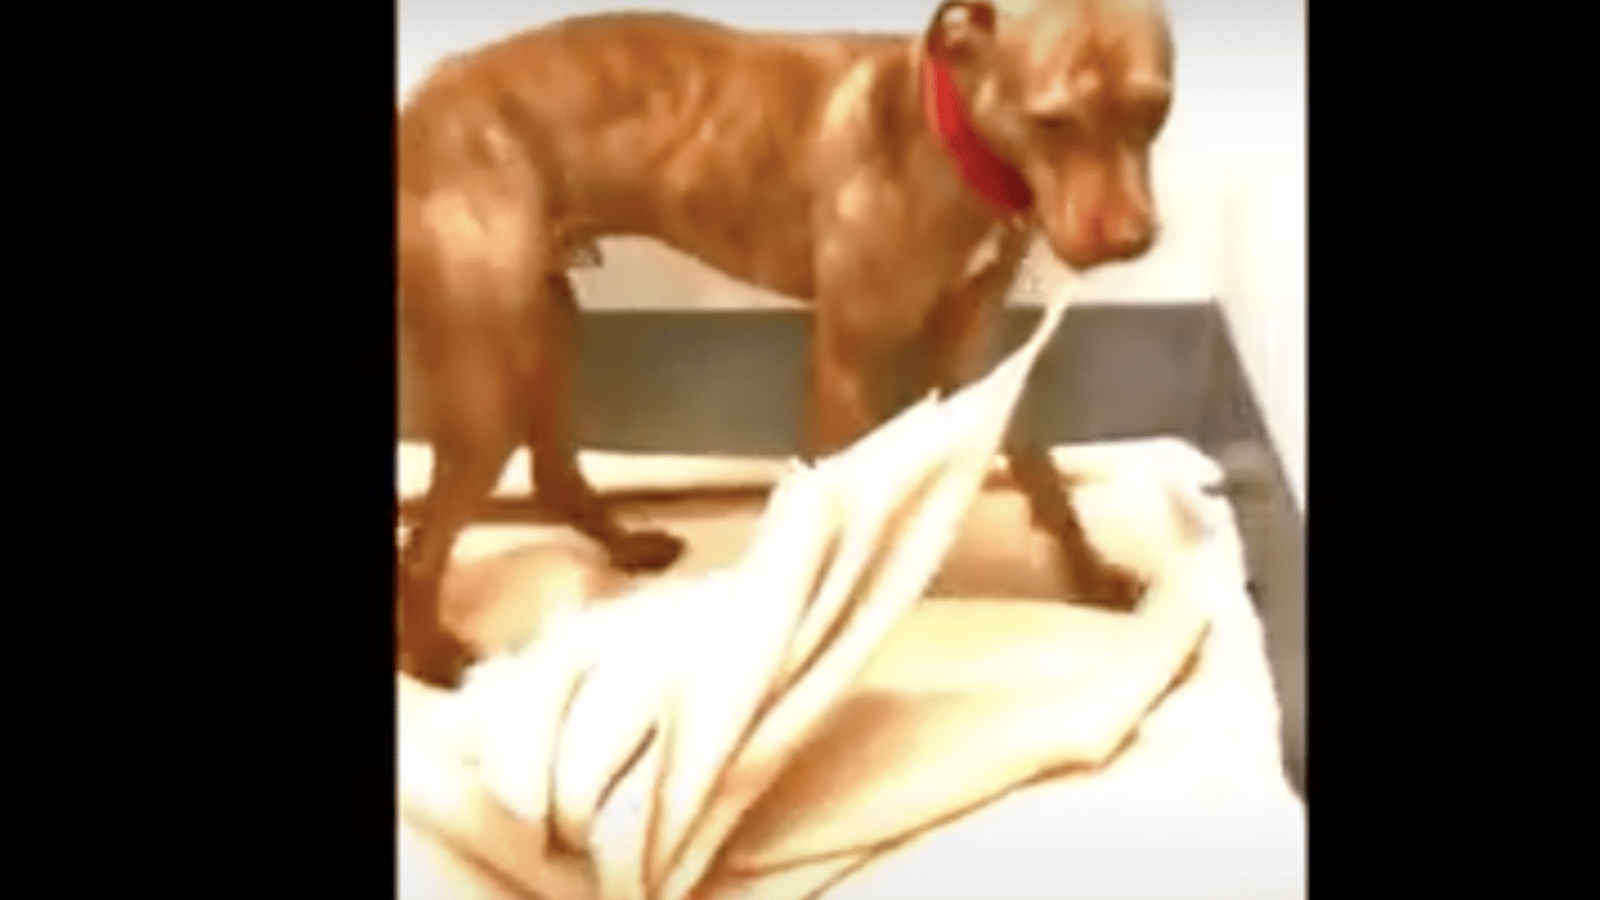 Vidéo: Ce chien de refuge mal-aimé a décidé de faire son lit lui-même